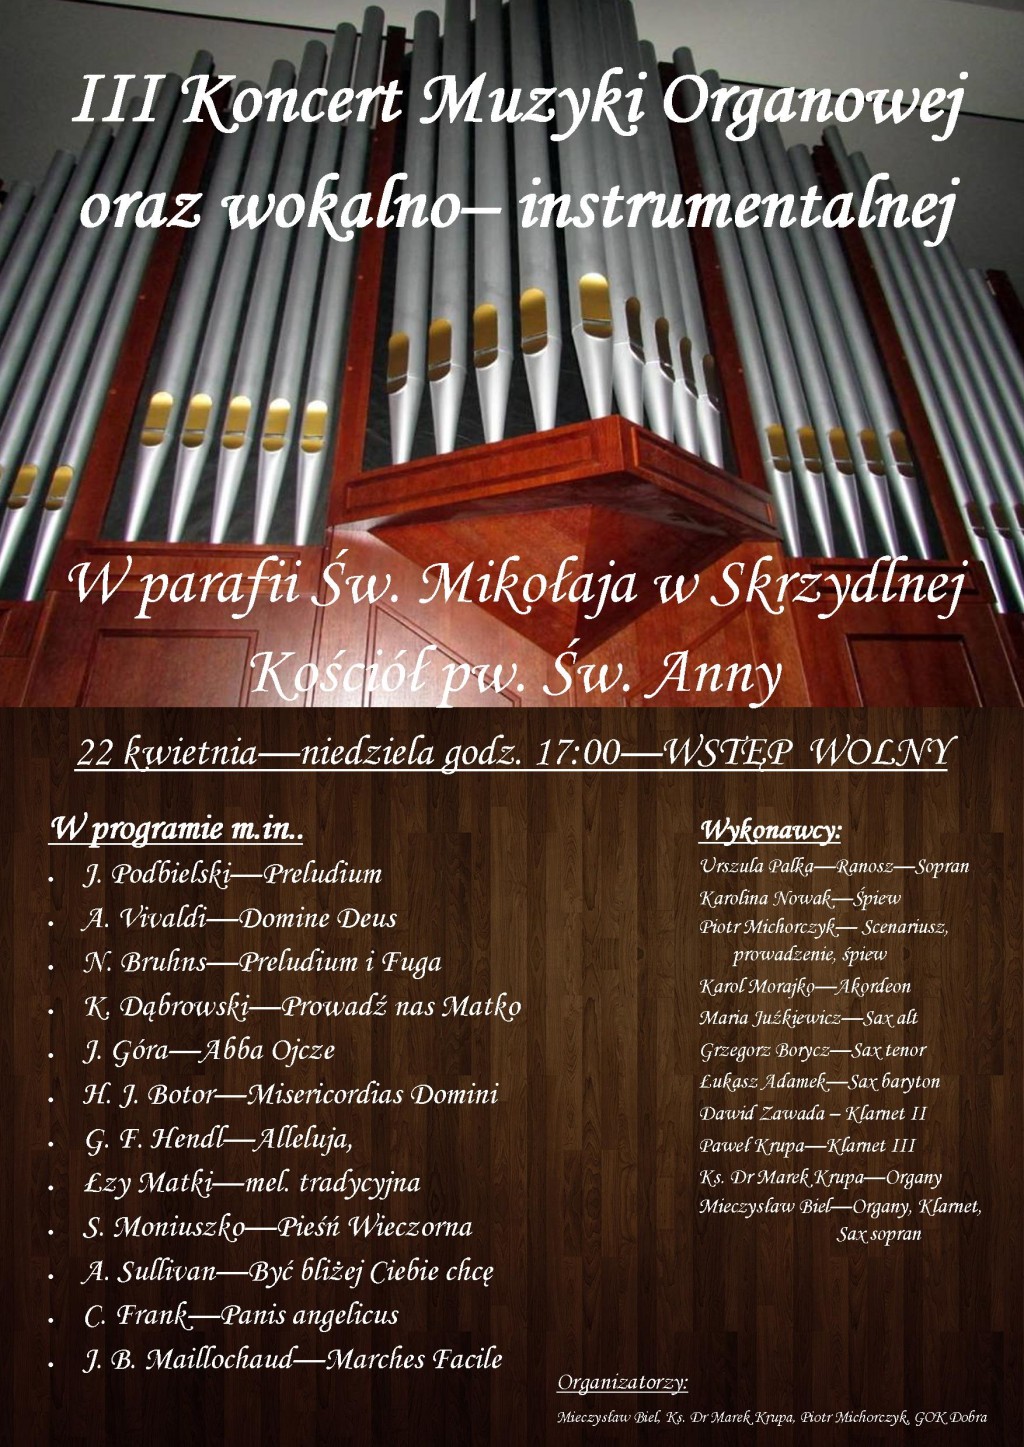 III Koncert Muzyki Organowej oraz wokalno-instrumentalnej - 22 kwietnia w Skrzydlnej